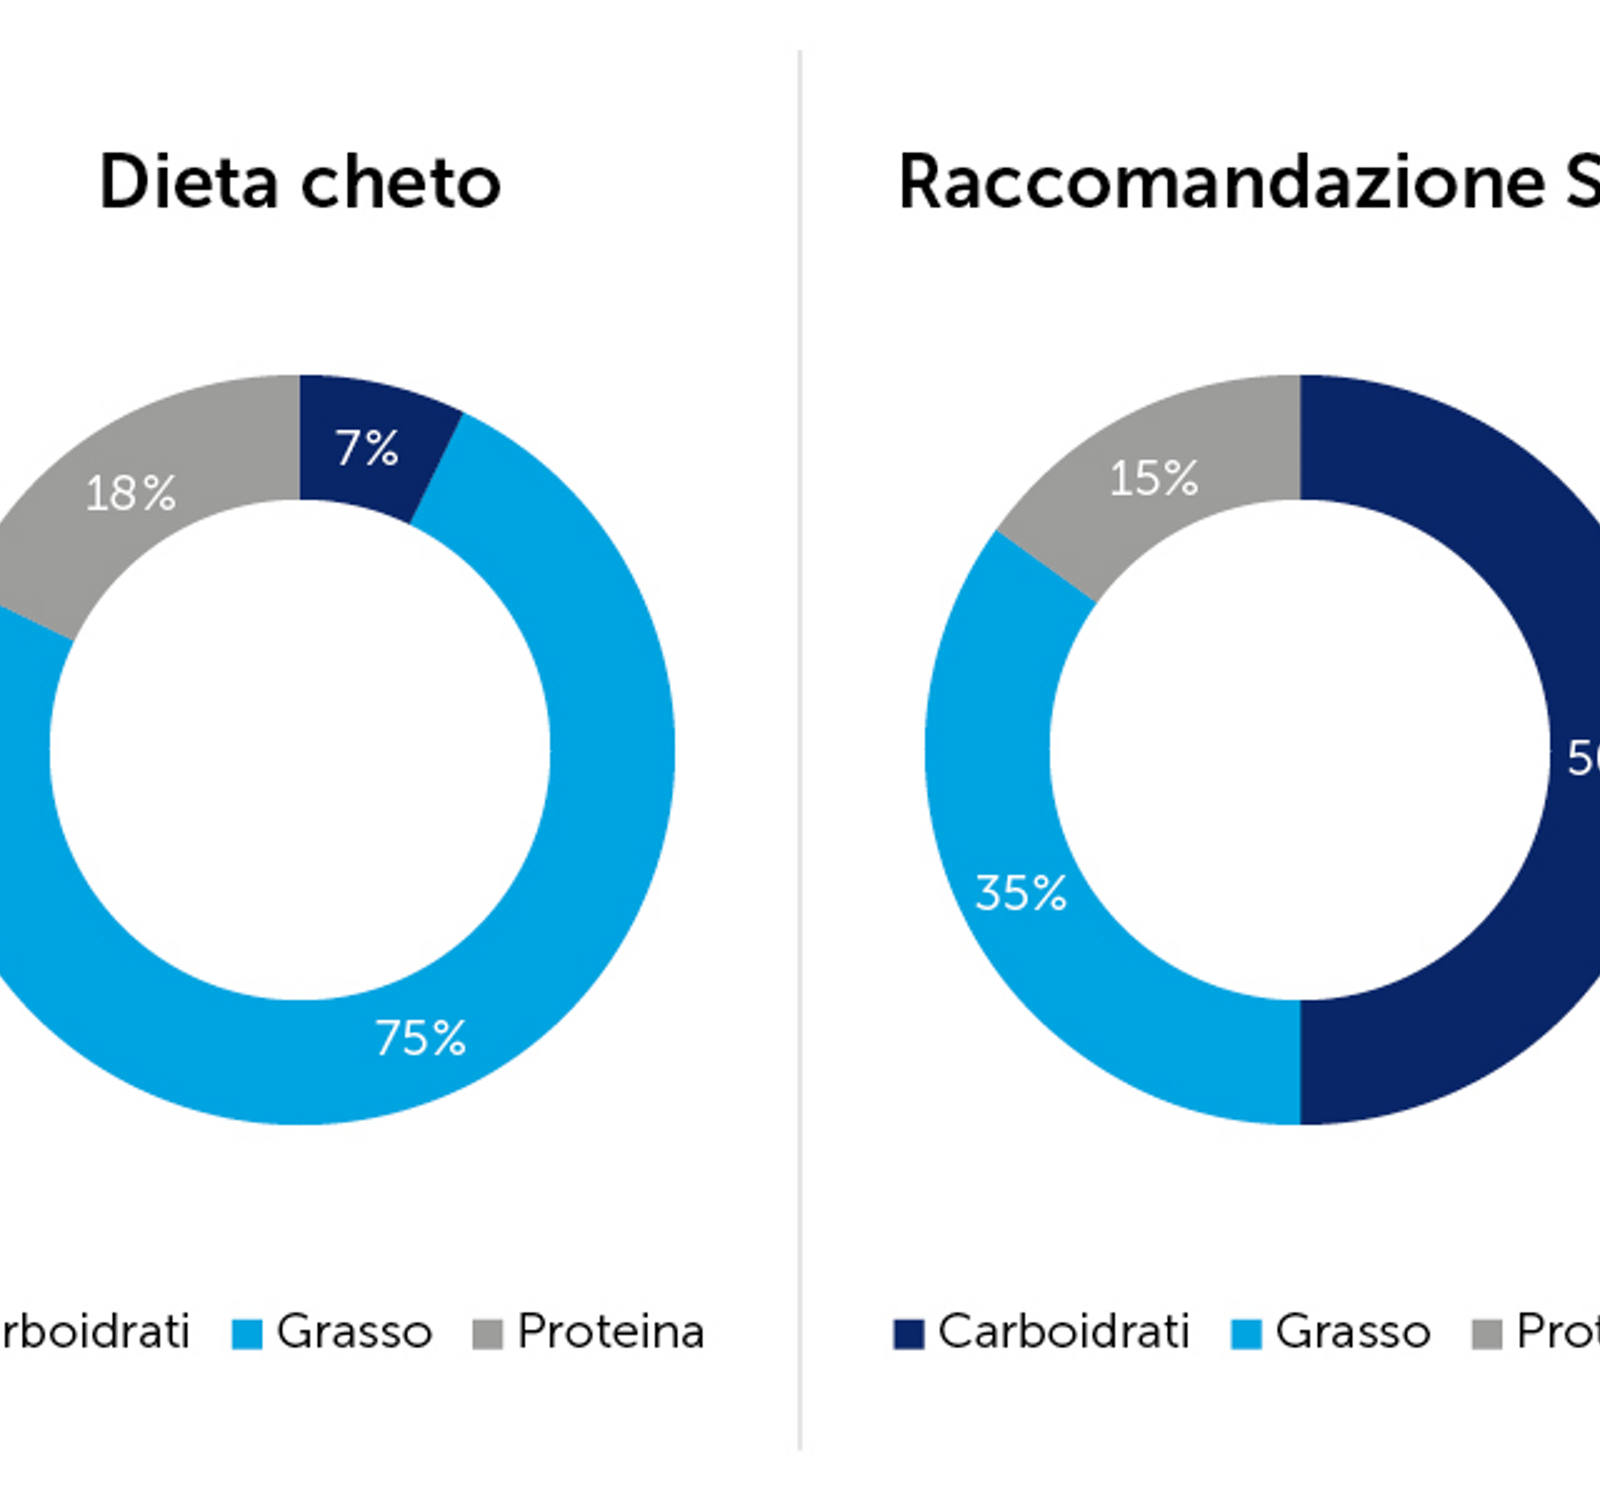 Dieta cheto vs. consiglio SSN: confronto distribuzione carboidrati, grassi e proteine